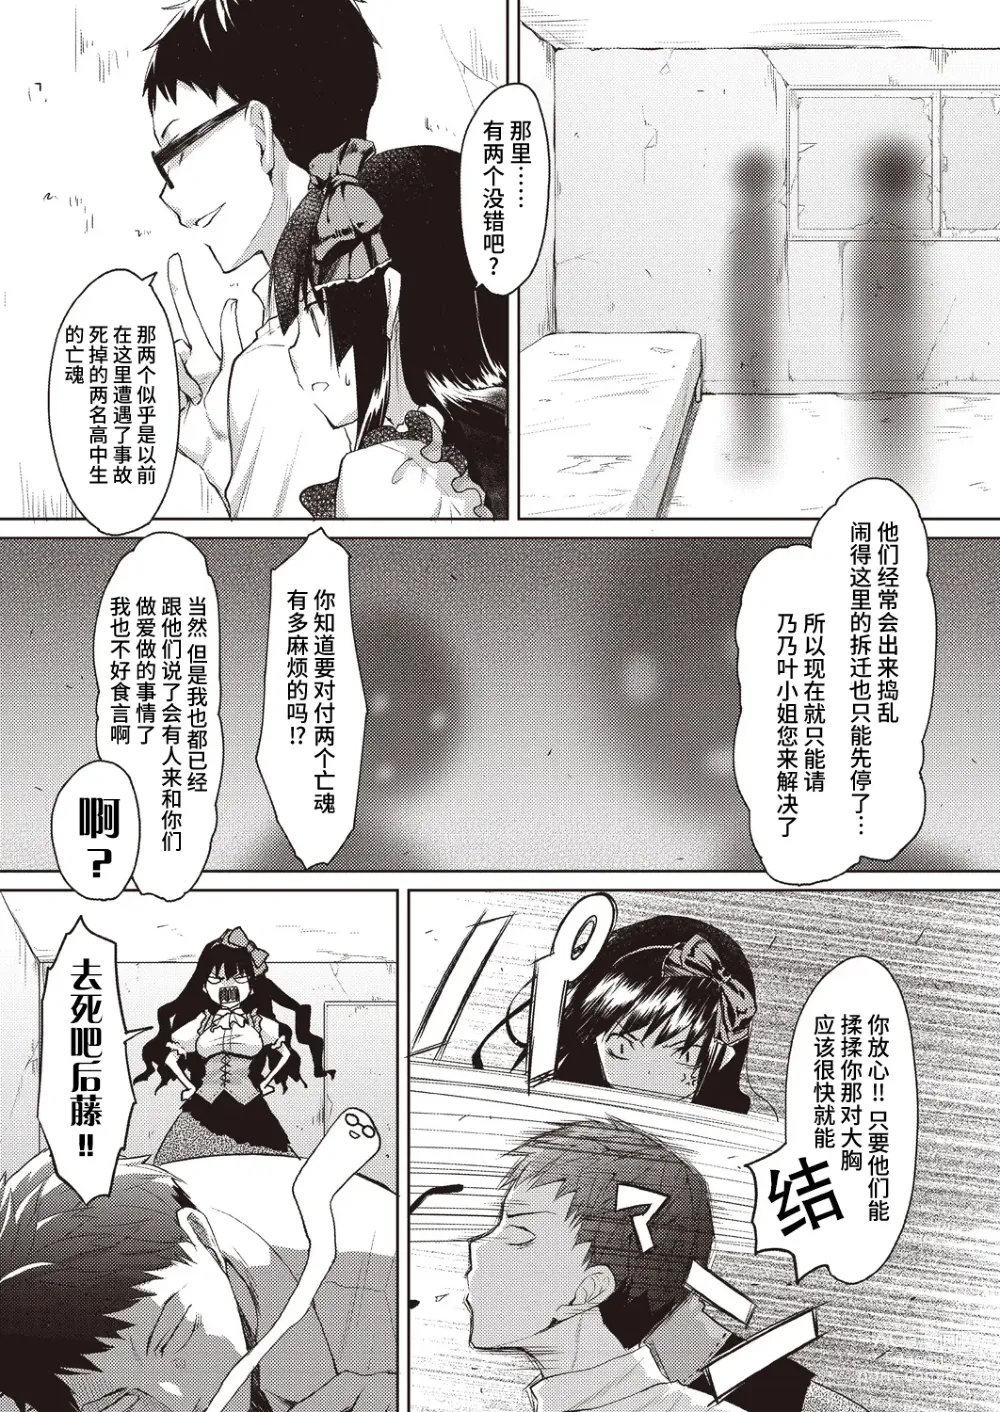 Page 11 of manga Kareobana Kitan Ch.1